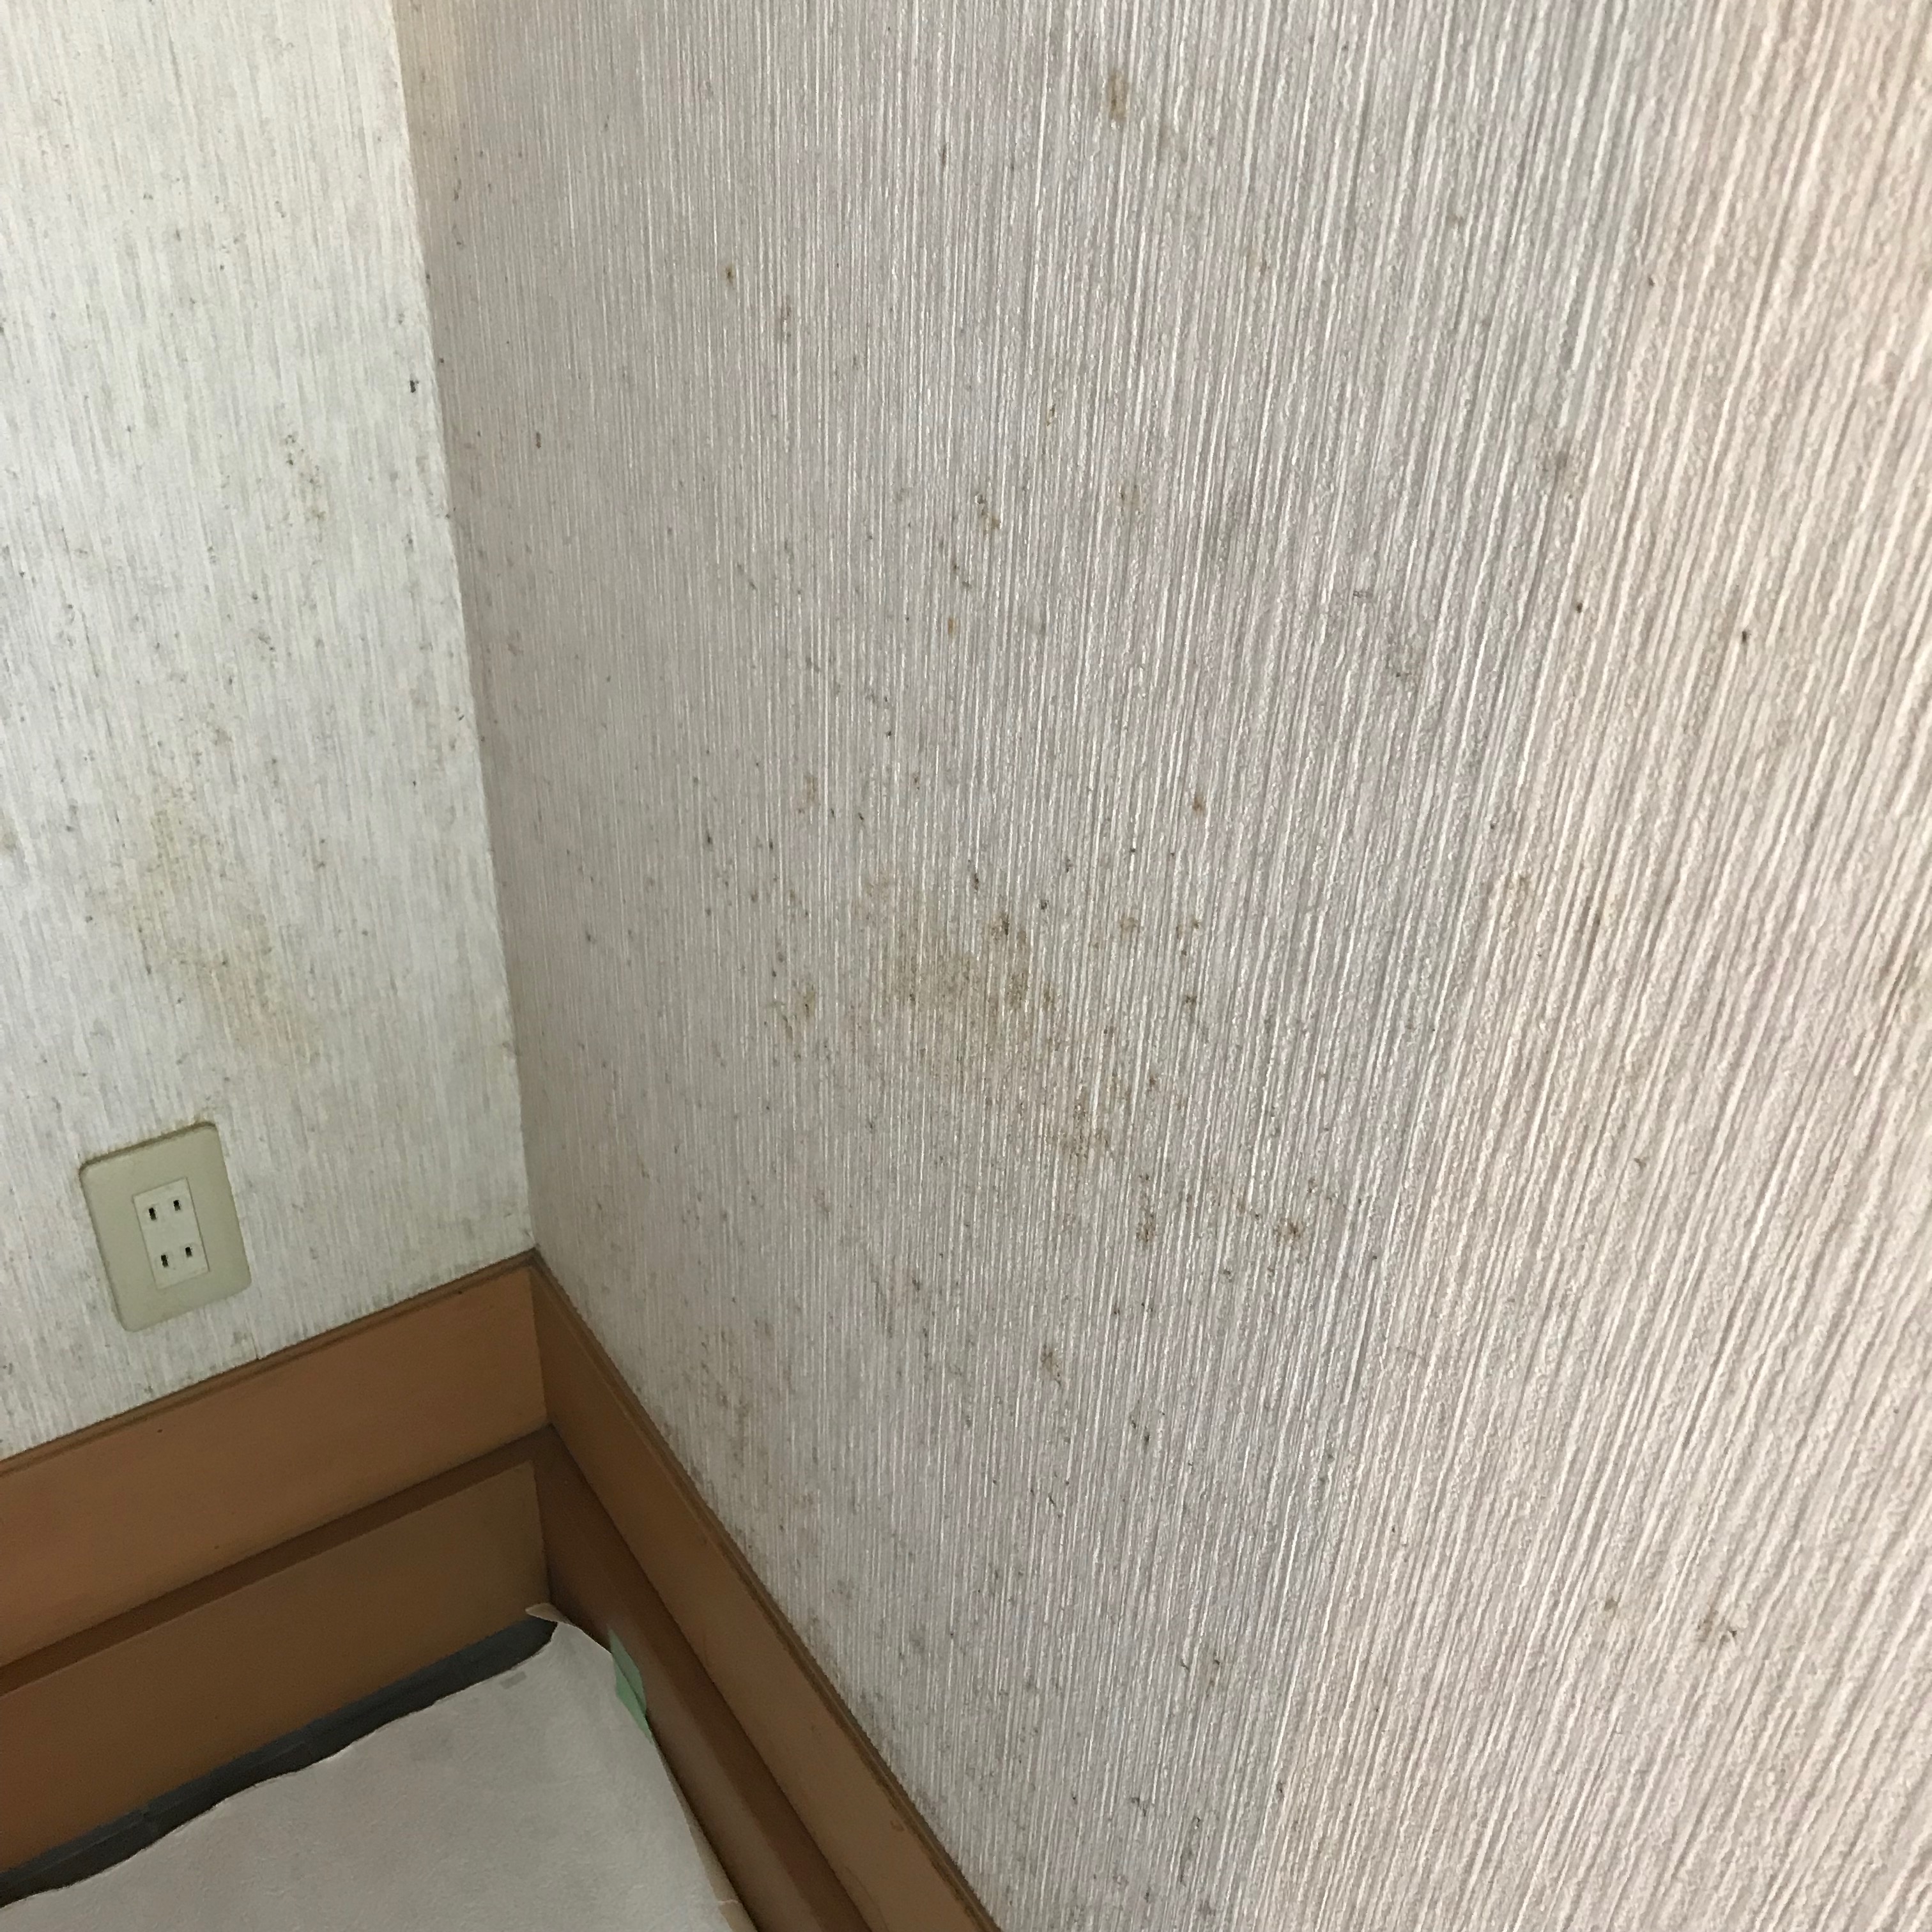 壁紙に発生したカビの原因と対処法 京都南部 戸建てリフォームとカーテン ブラインドの専門店 K House ケーハウス